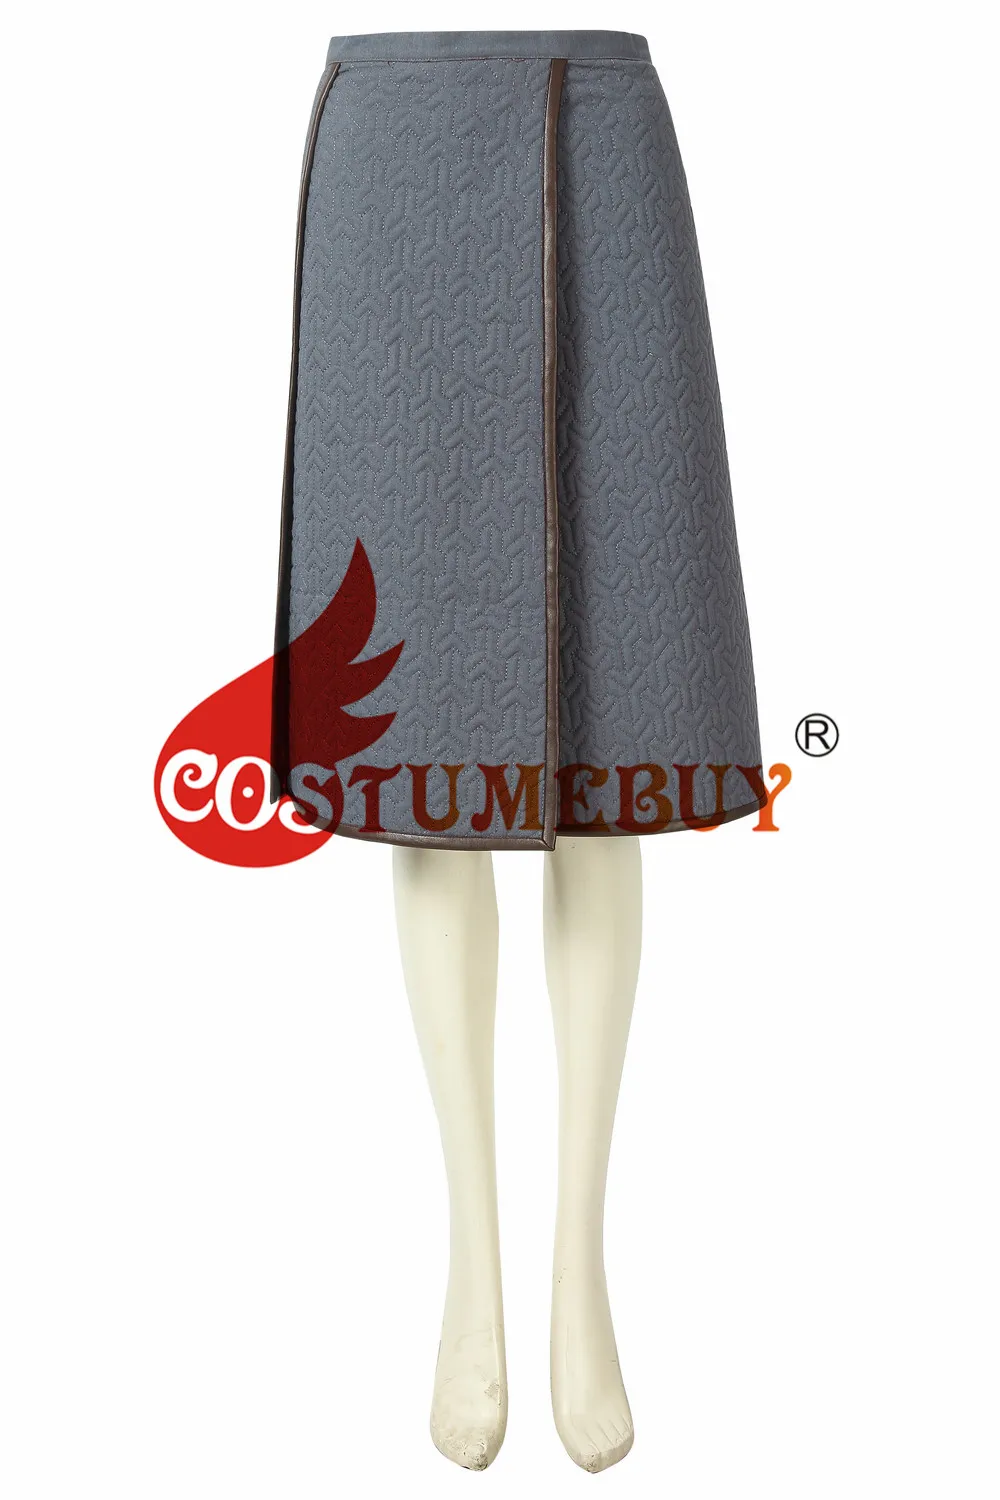 Costumebuy Игра престолов 8 Маскарадные костюмы Ария Старк плащ Топ и юбка средневековая военная зимняя костюм L920